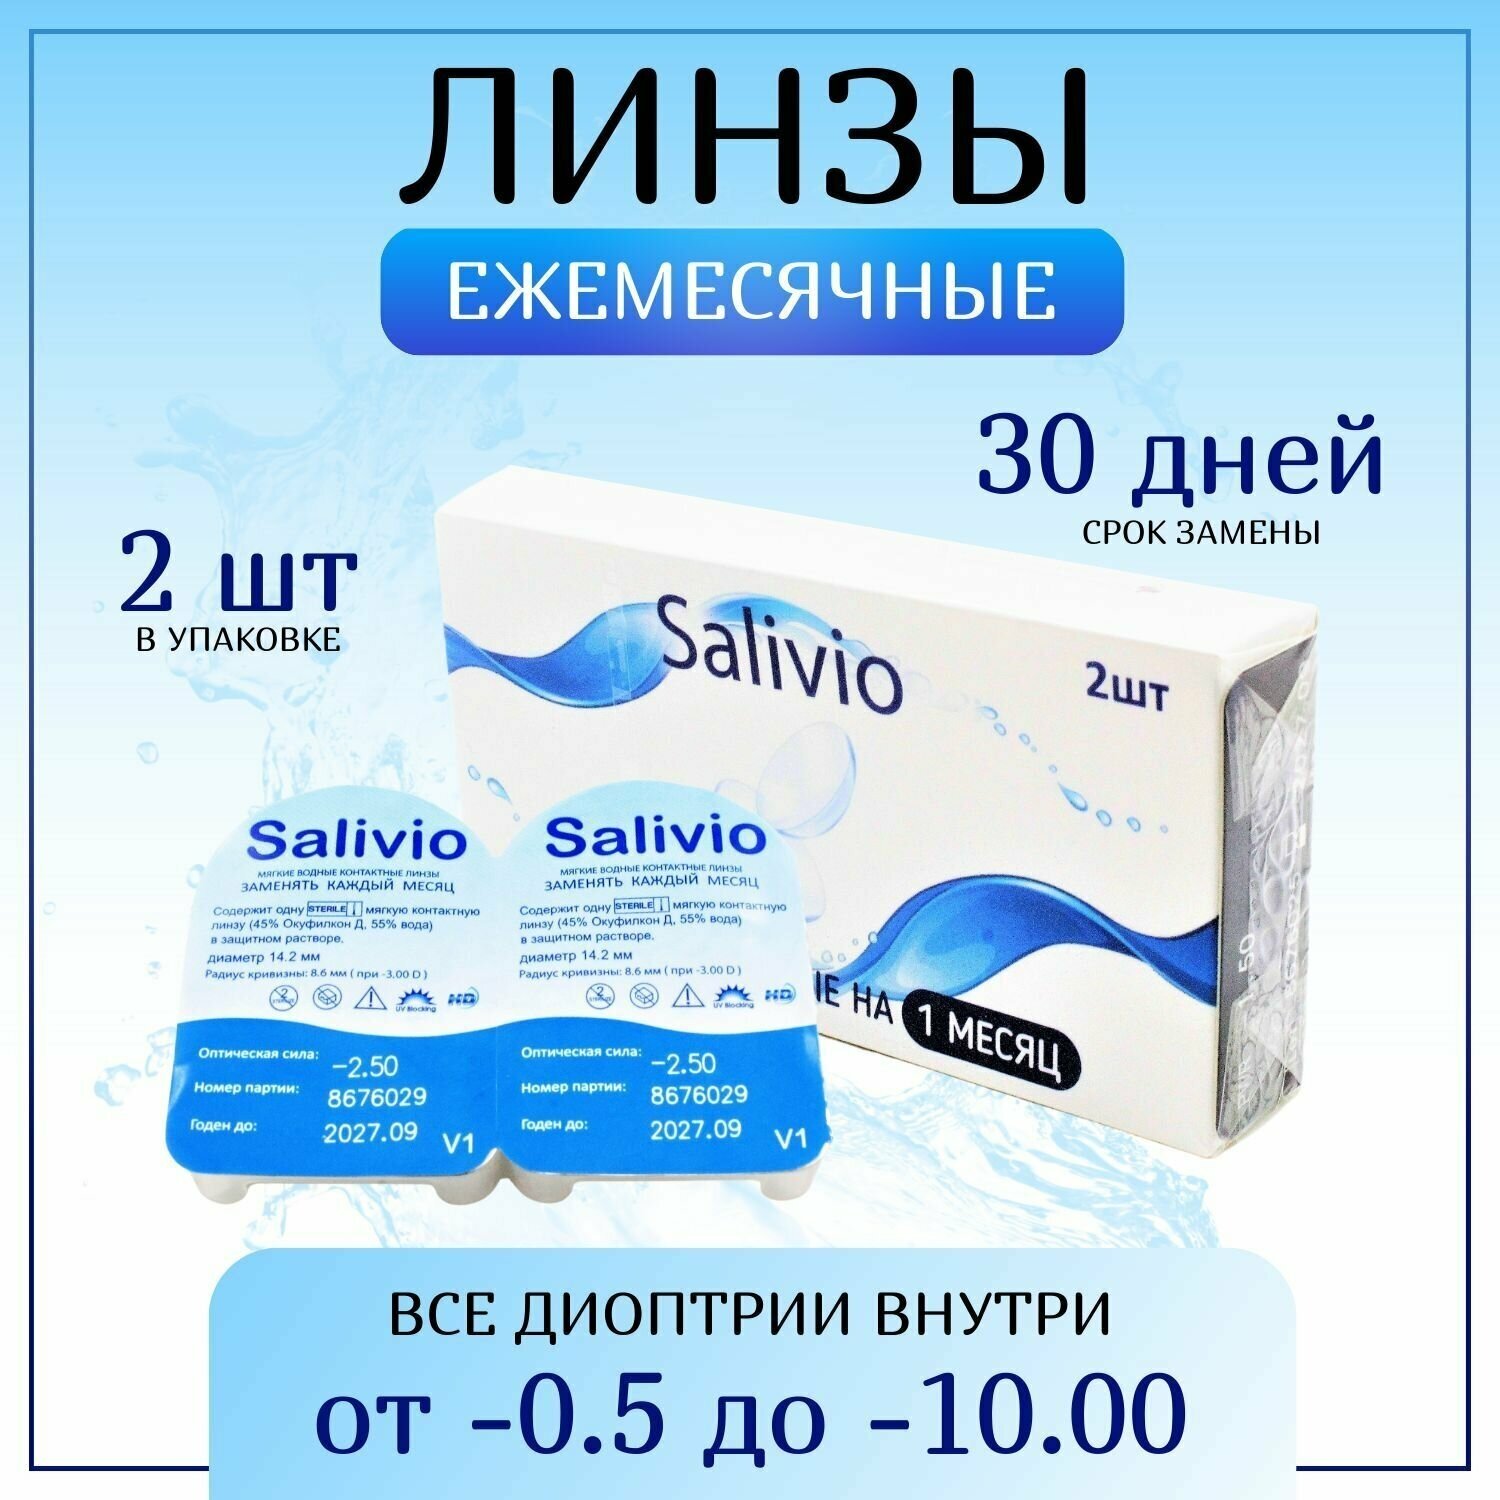 Контактные линзы, SALIVIO, -7,50 ежемесячные (30 дней), 2 штуки, прозрачные